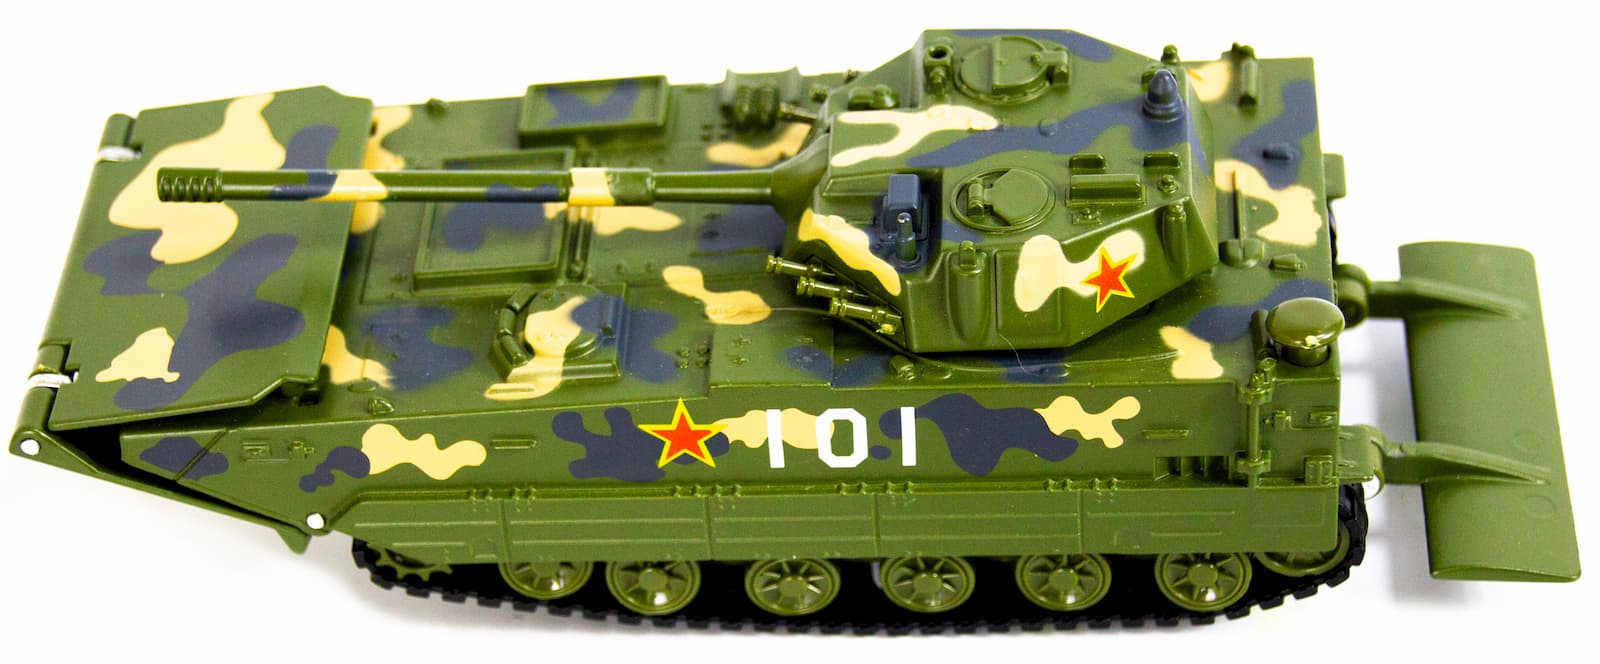 Металлический лёгкий плавающий танк Double Horses «Type 05AAV (Китай)» 0231, 15 см.  / Микс